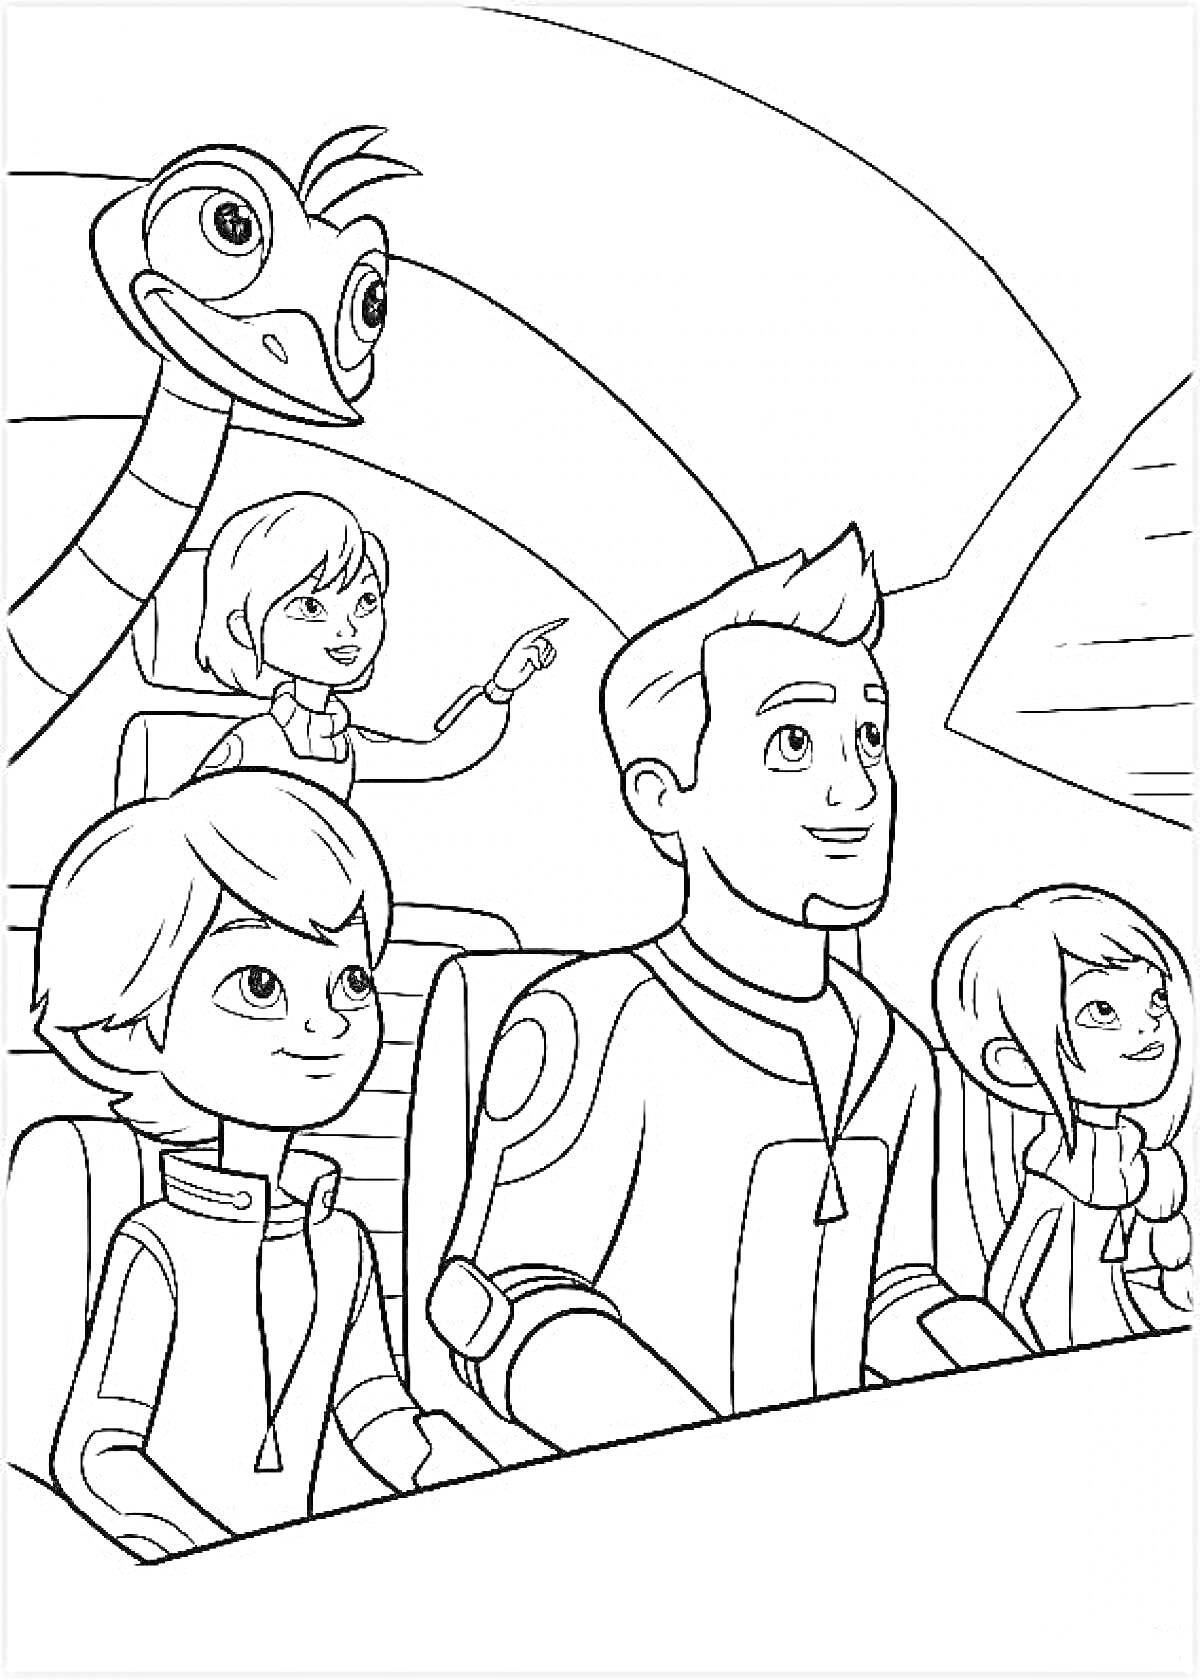 Майлз и команда в космическом корабле с роботом-страусом